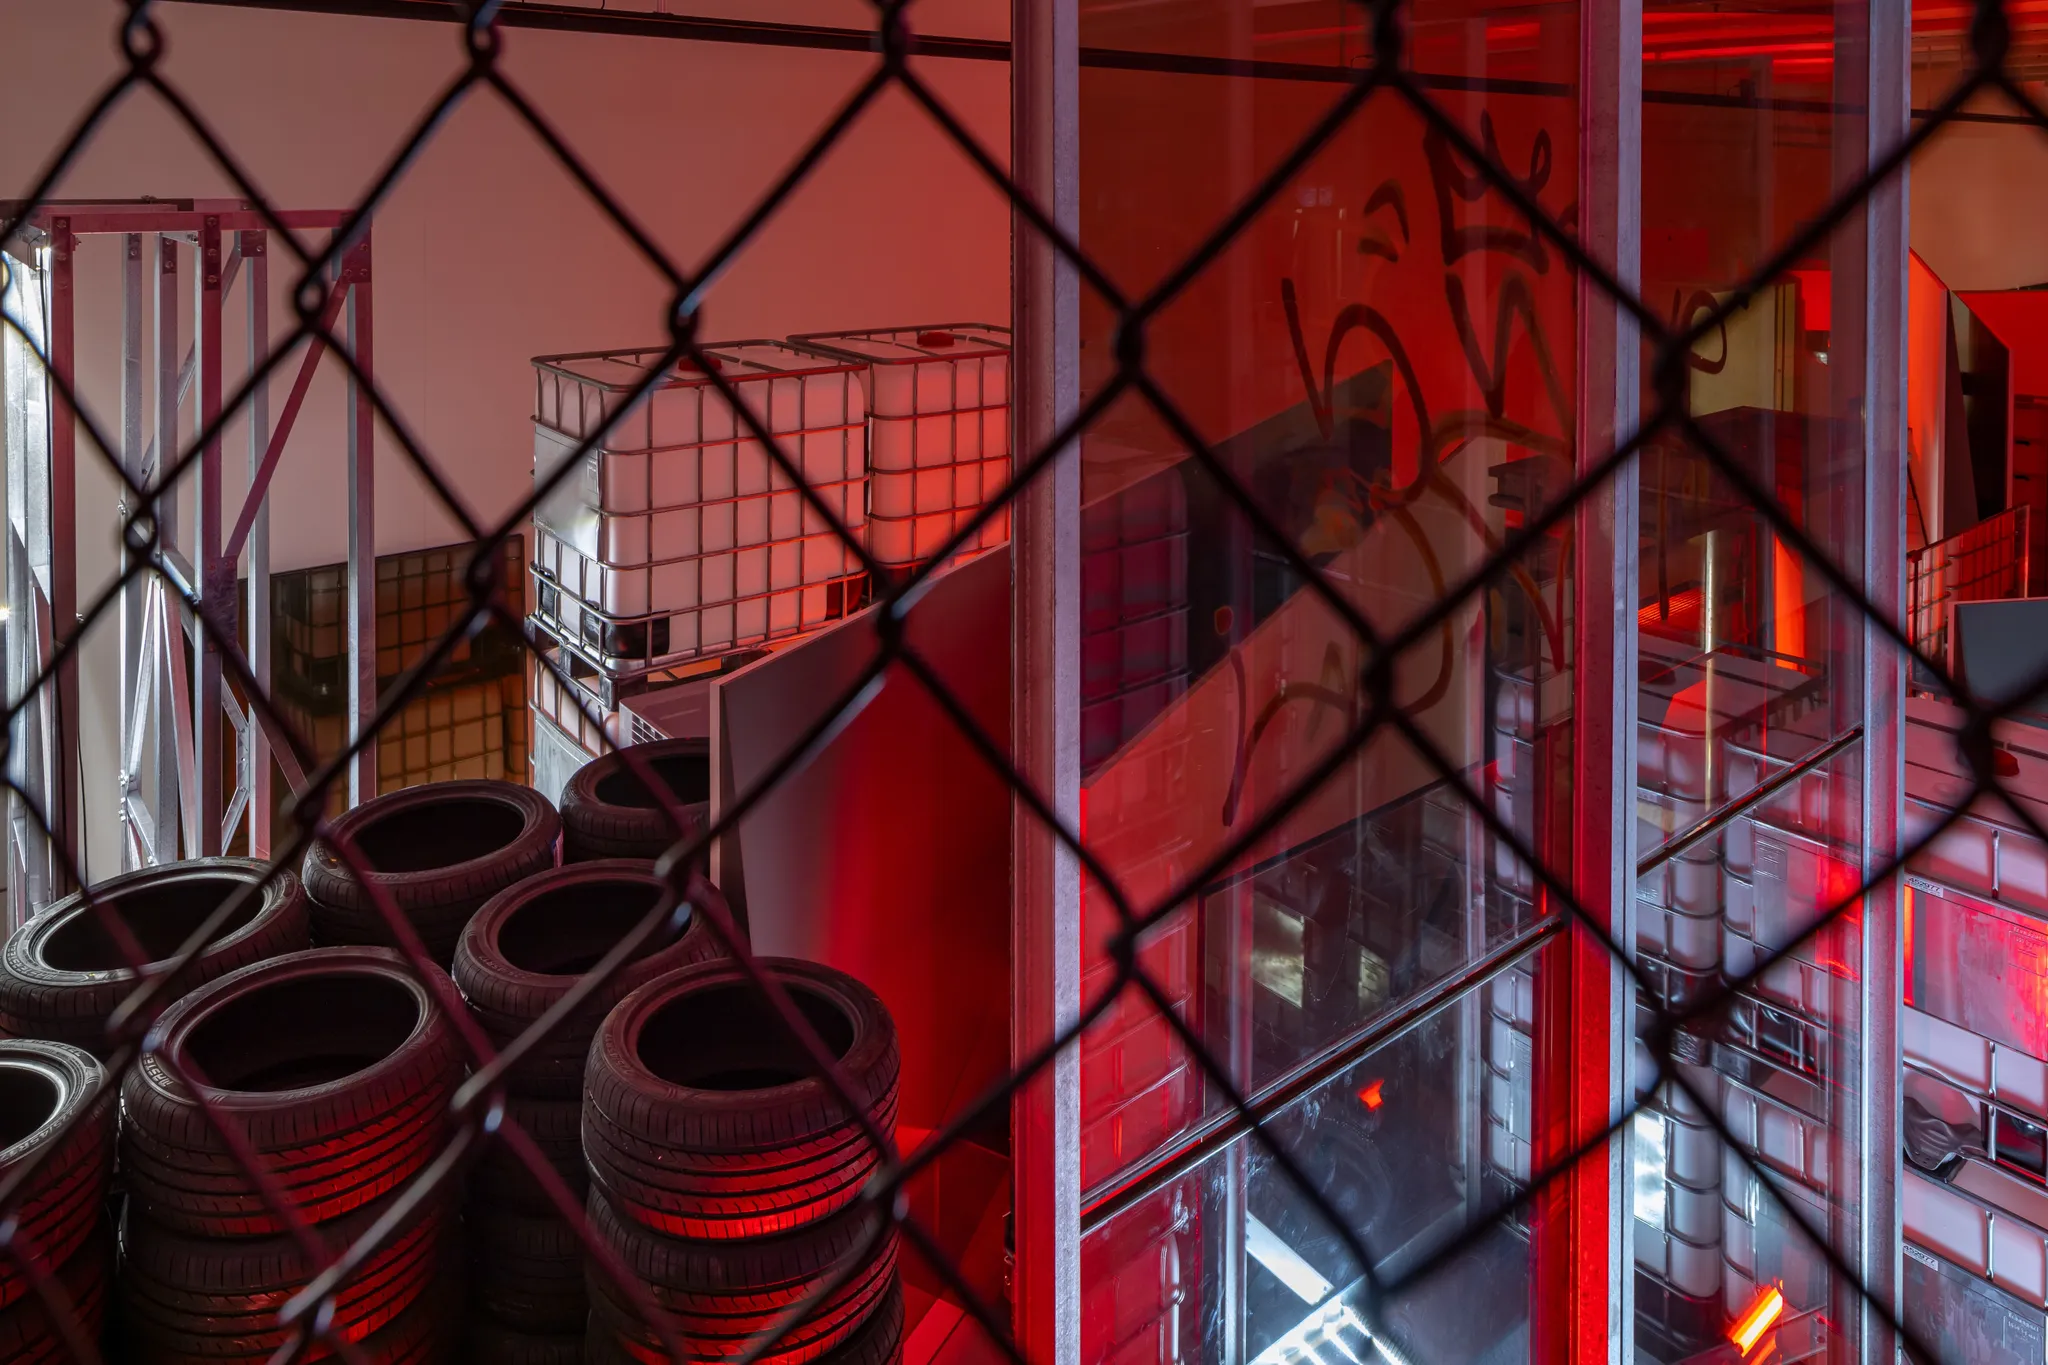 Bovenaanzicht van de tentoonstelling door een metalen hek: autobanden, grote glazen platen met graffiti's, gestapelde watertanks, omgeven door rood licht